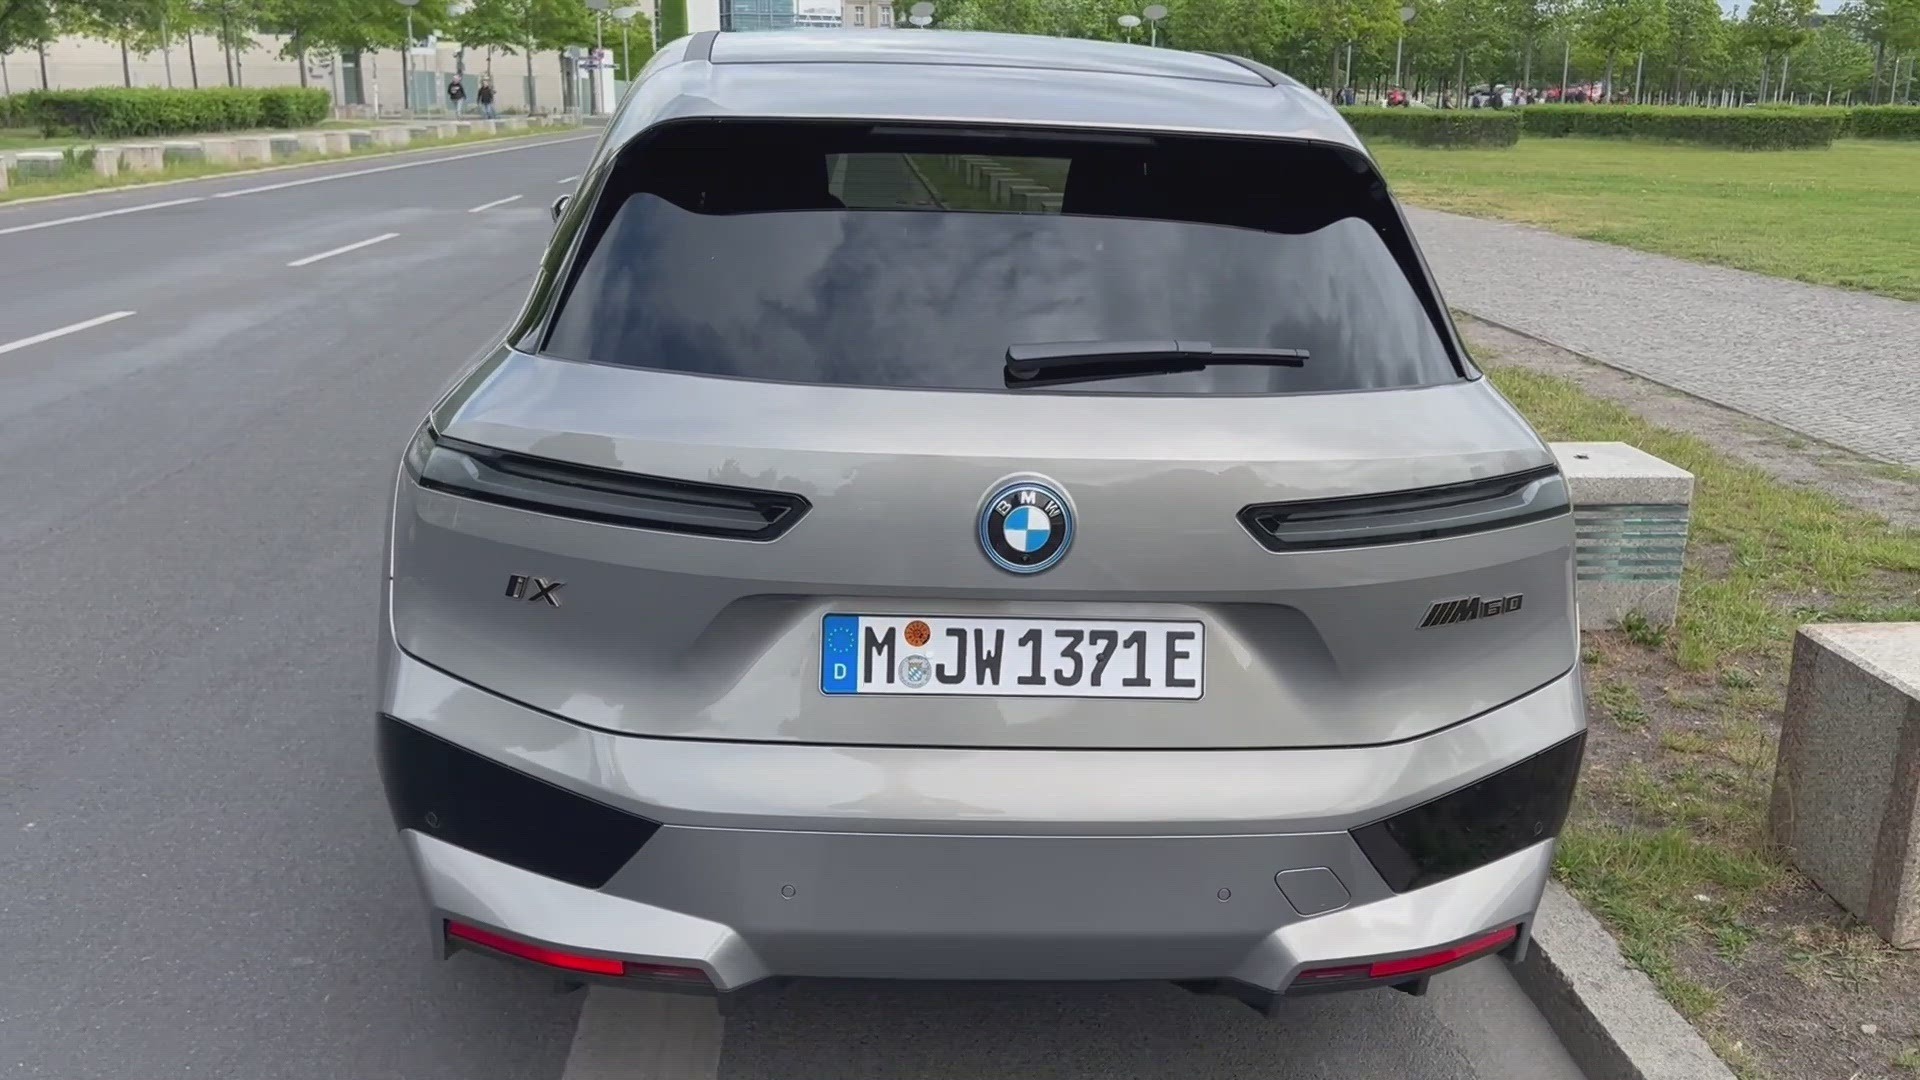 Her er første test av BMW IX M60